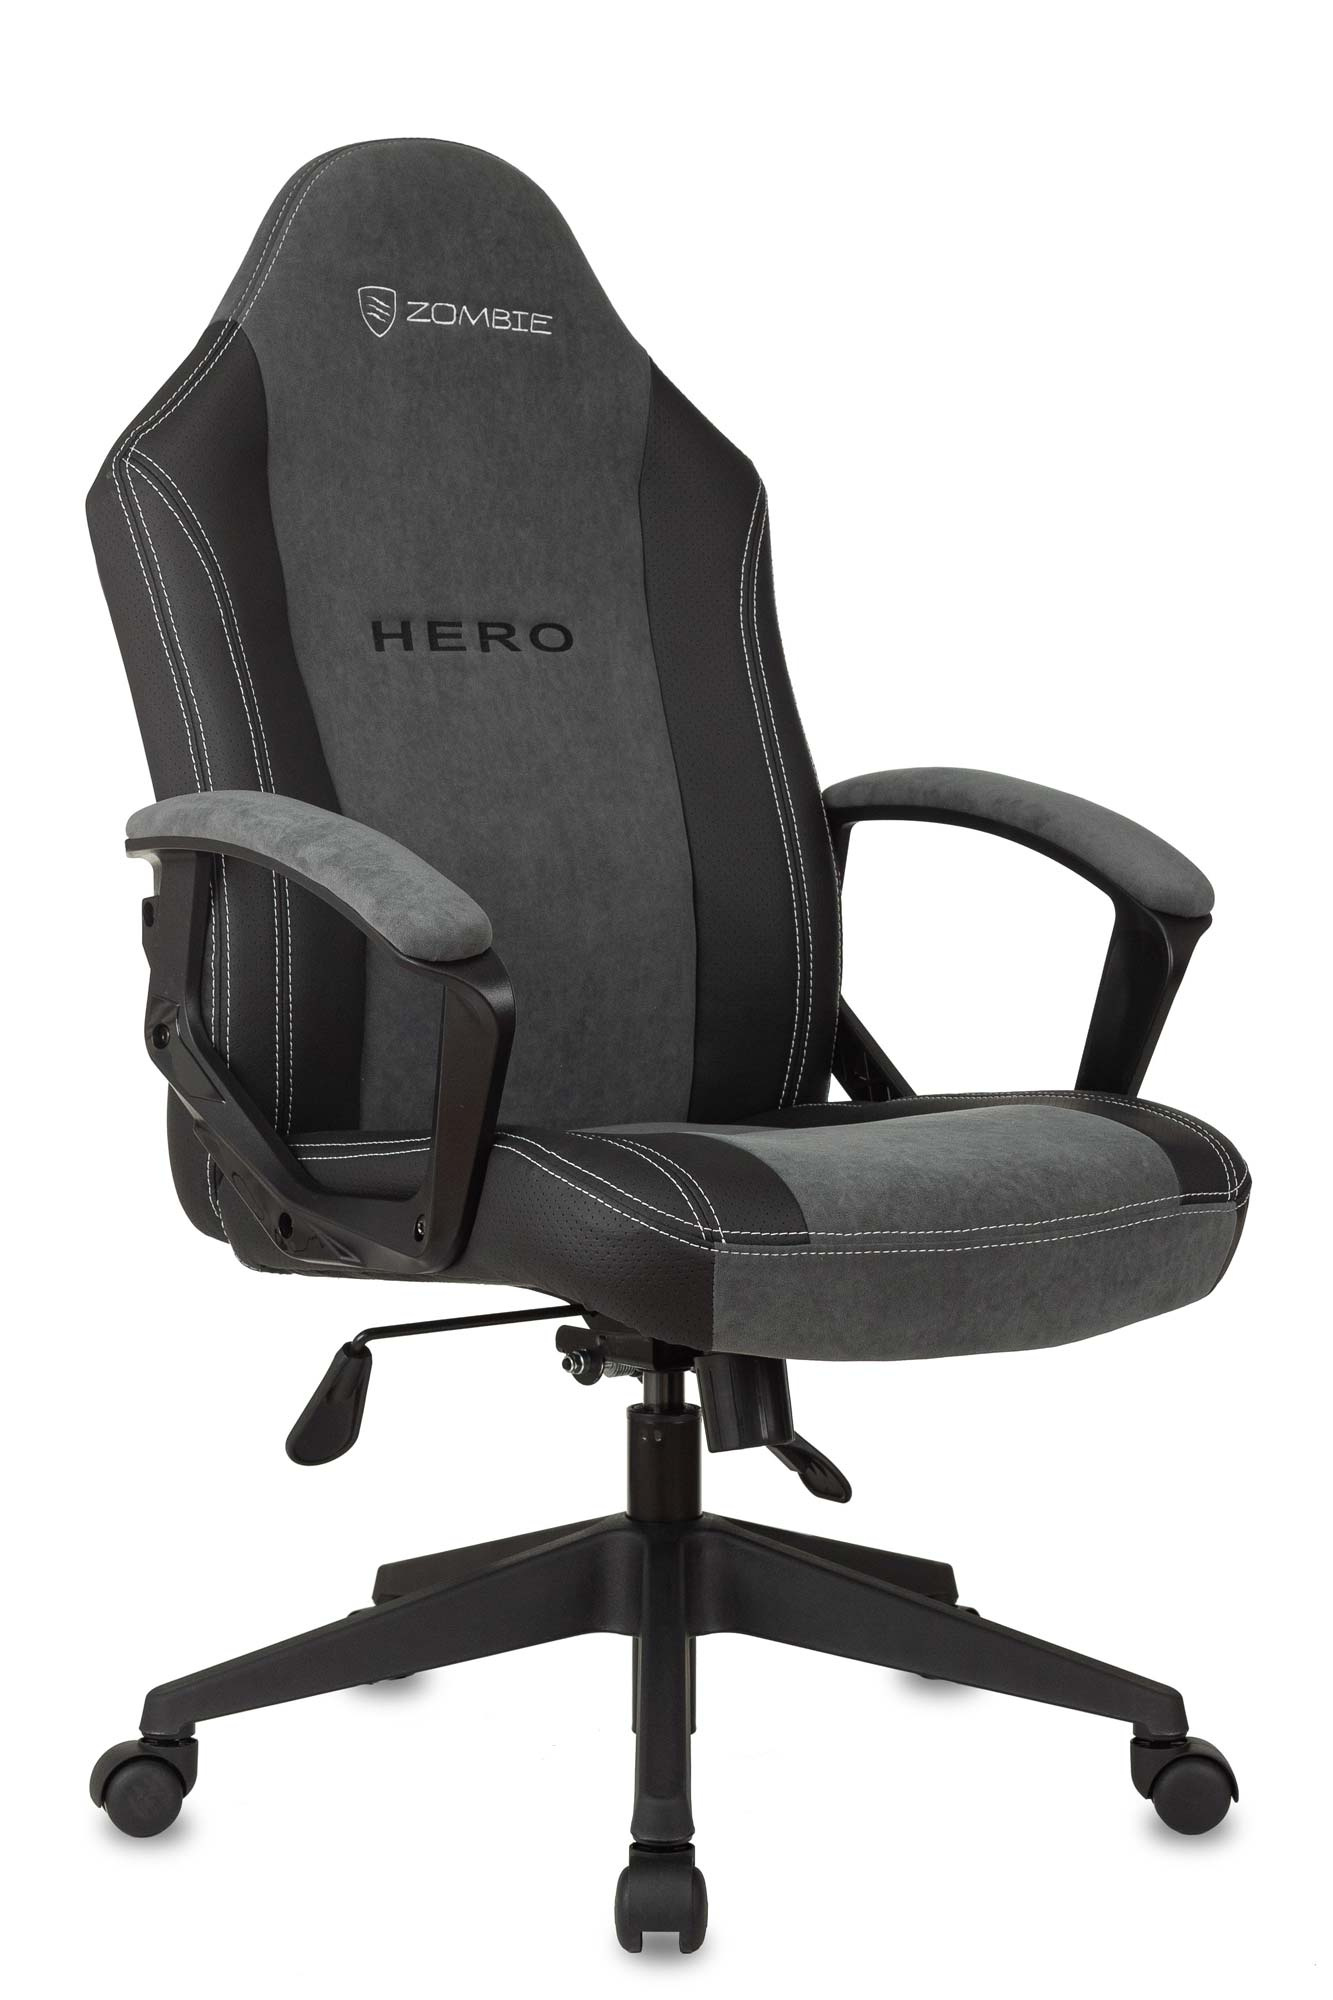 Игровые кресла  E2E4 Кресло игровое Бюрократ ZOMBIE Hero, серый (ZOMBIE HERO)